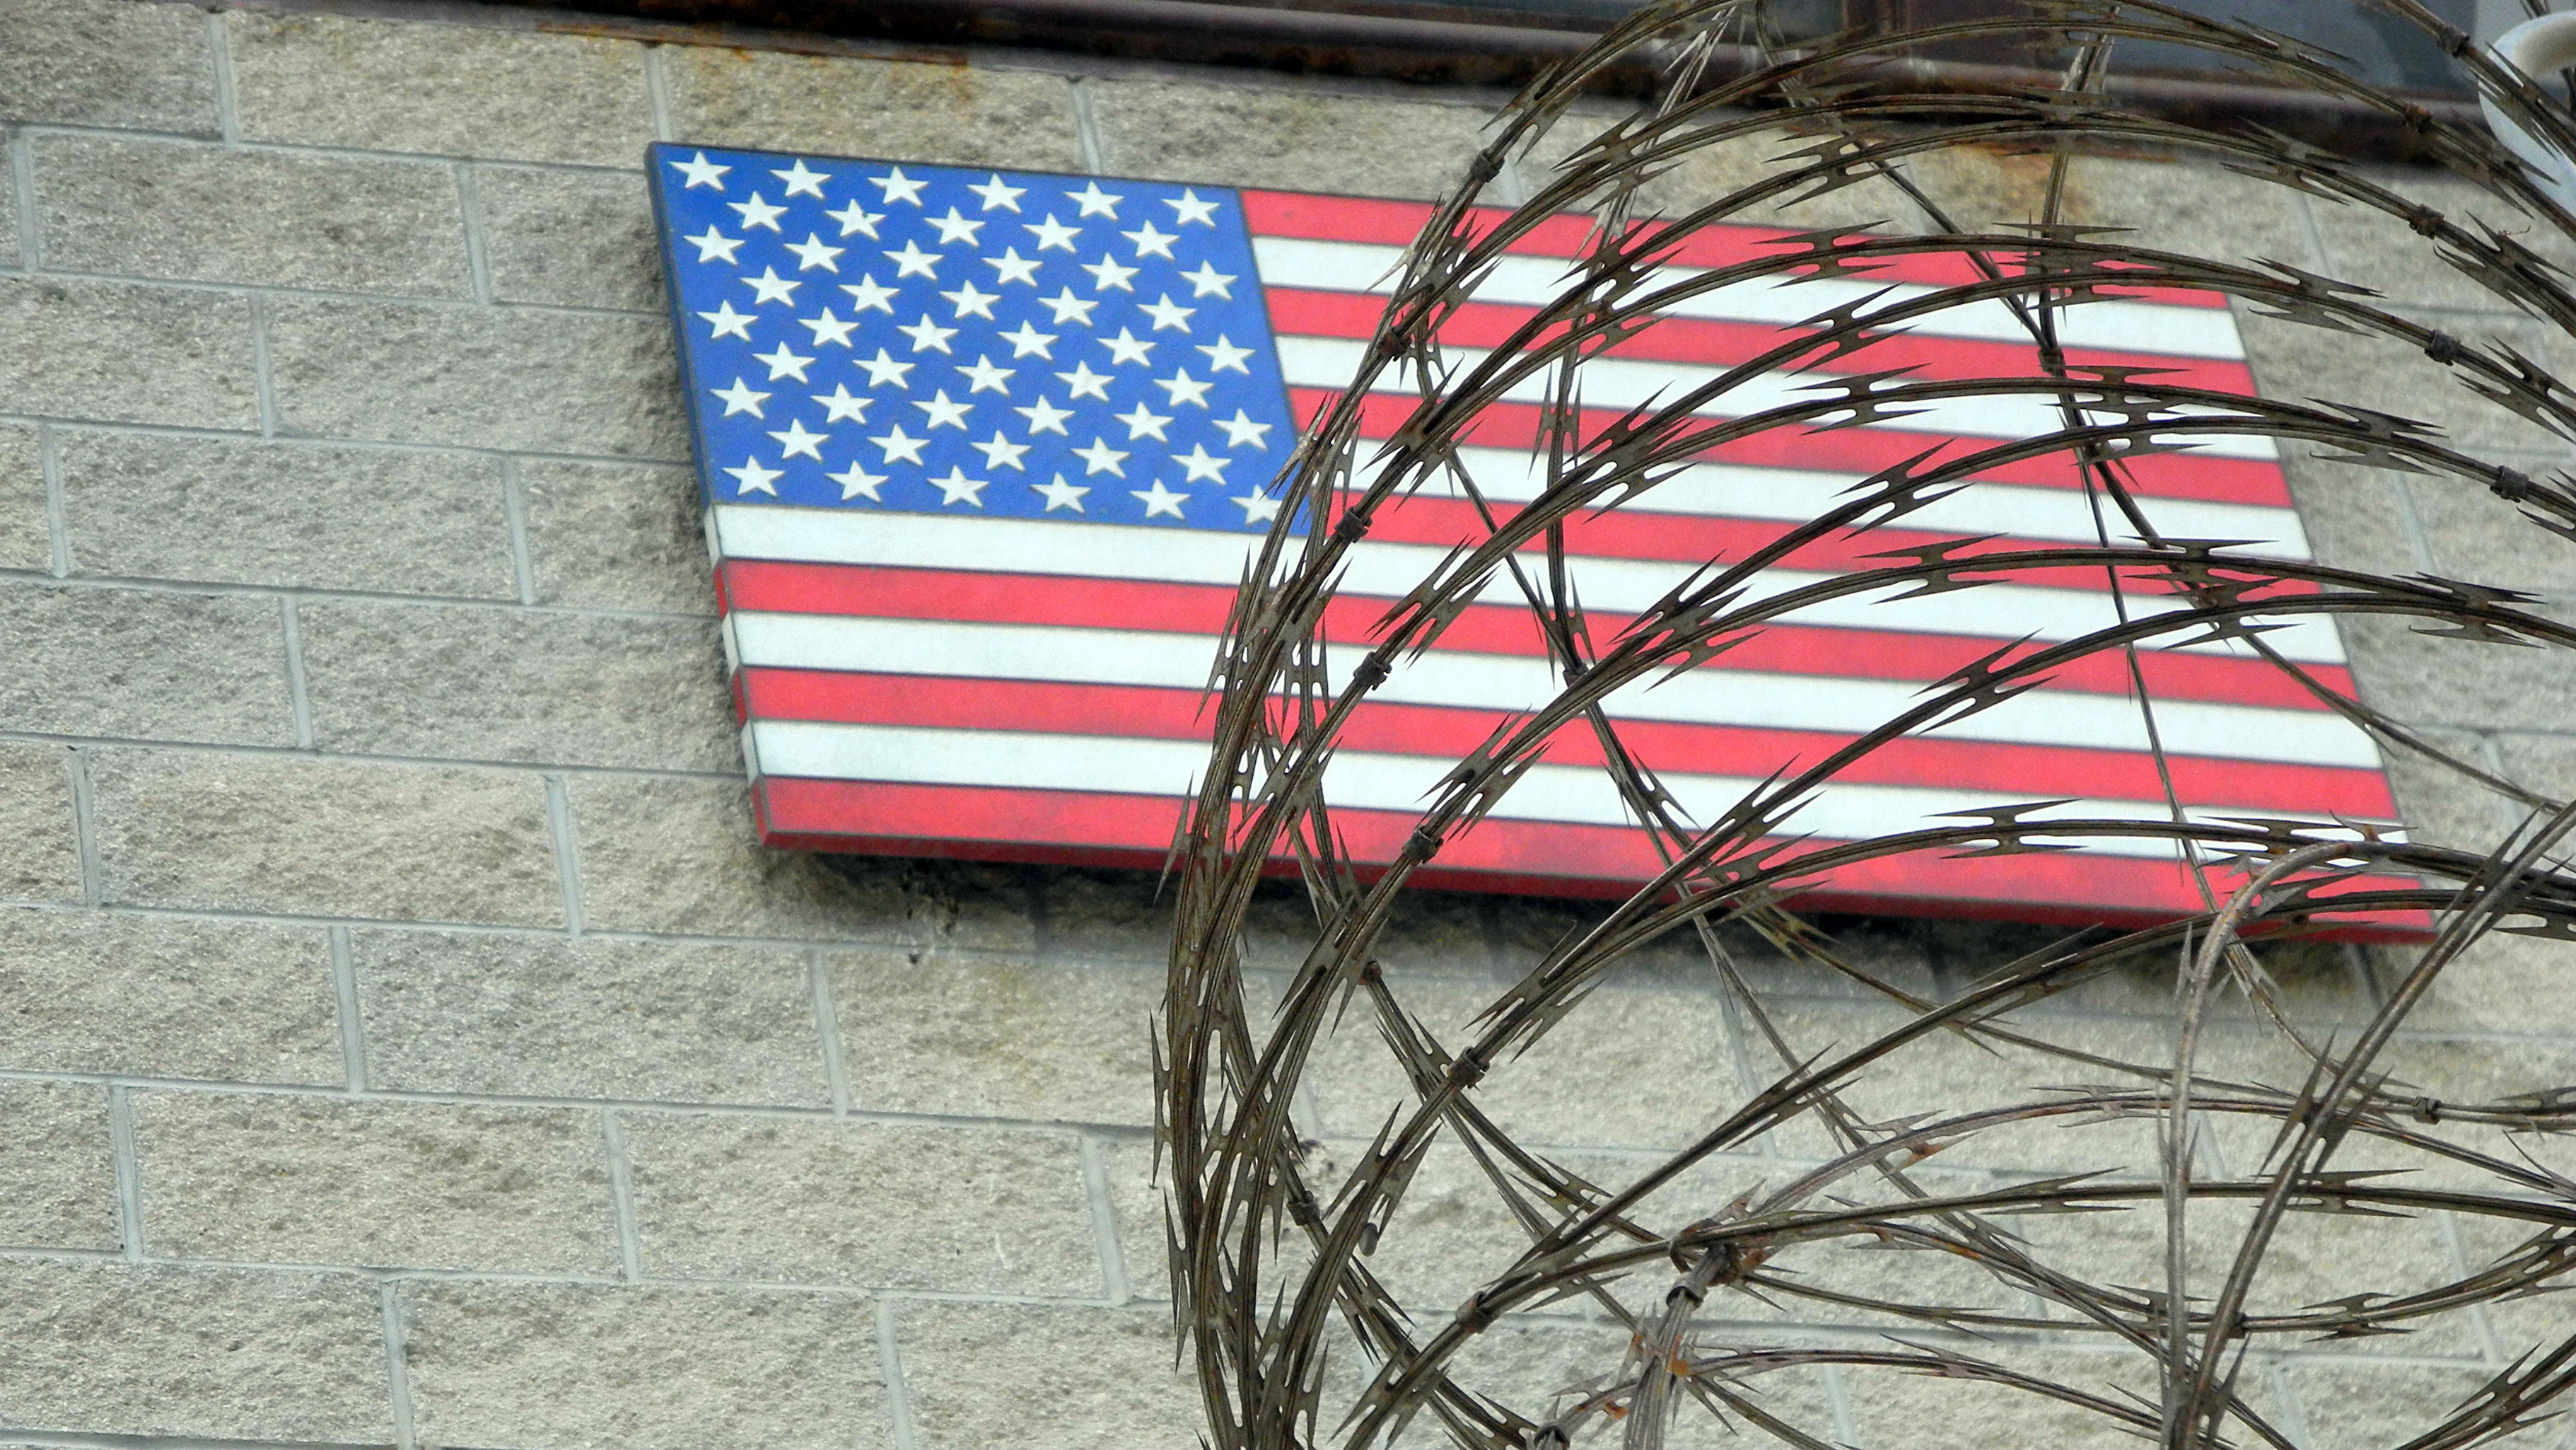 Guantanamo Bay Prison